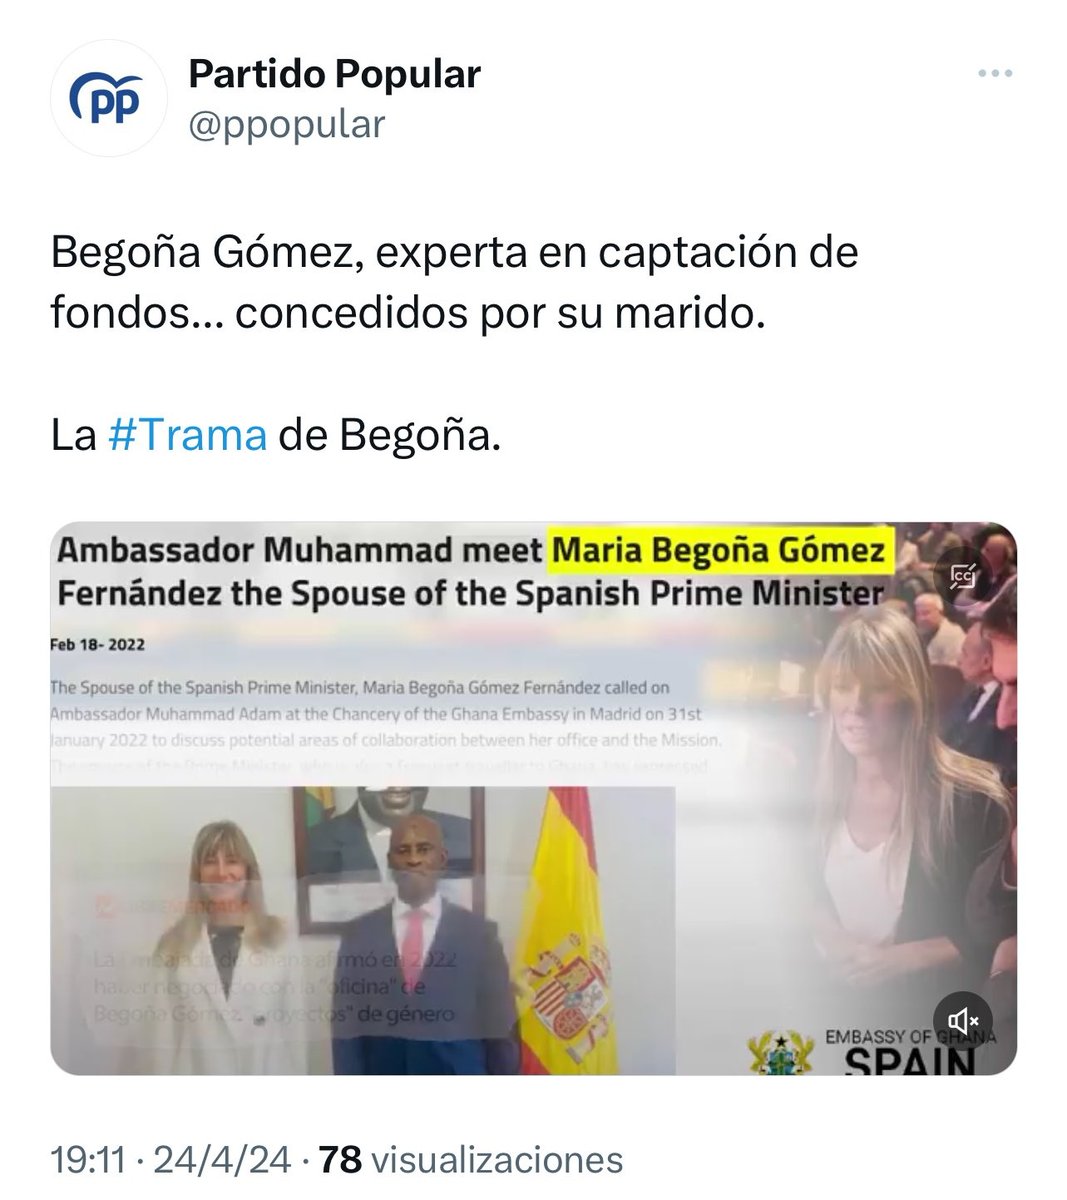 El Partido Popular ha borrado este tweet tras la carta de Pedro Sánchez.

No hay que ser muy listo para saber quién ha orquestado todo lo que está ocurriendo desde sus medios regados con publicidad institucional y sus terminales judiciales con el bloqueo del CGPJ.